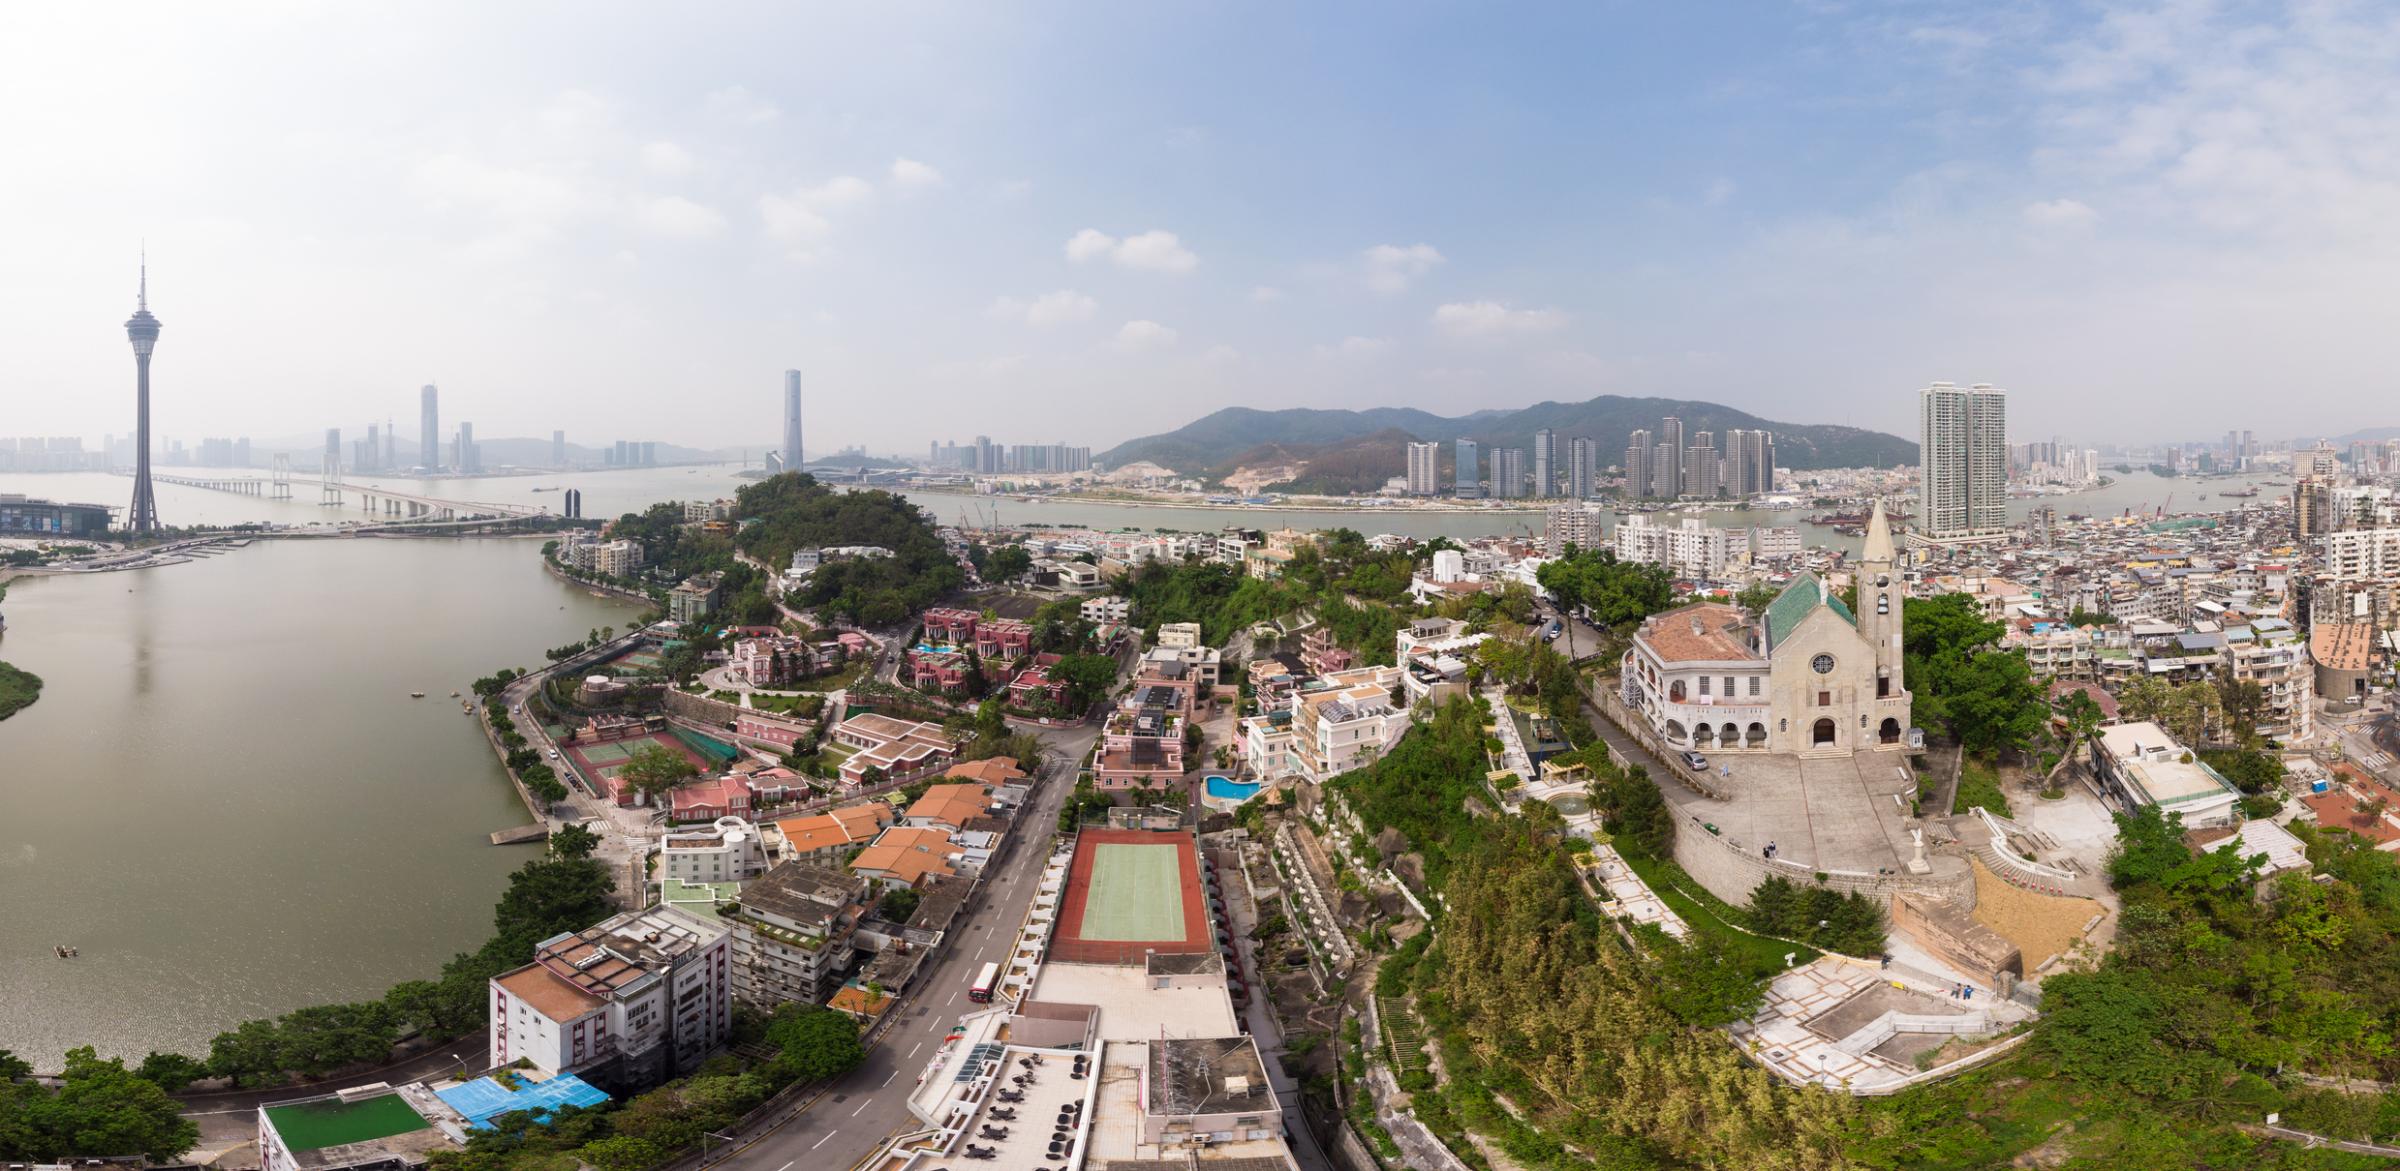 Macau panorama with Macau tower and Penha church